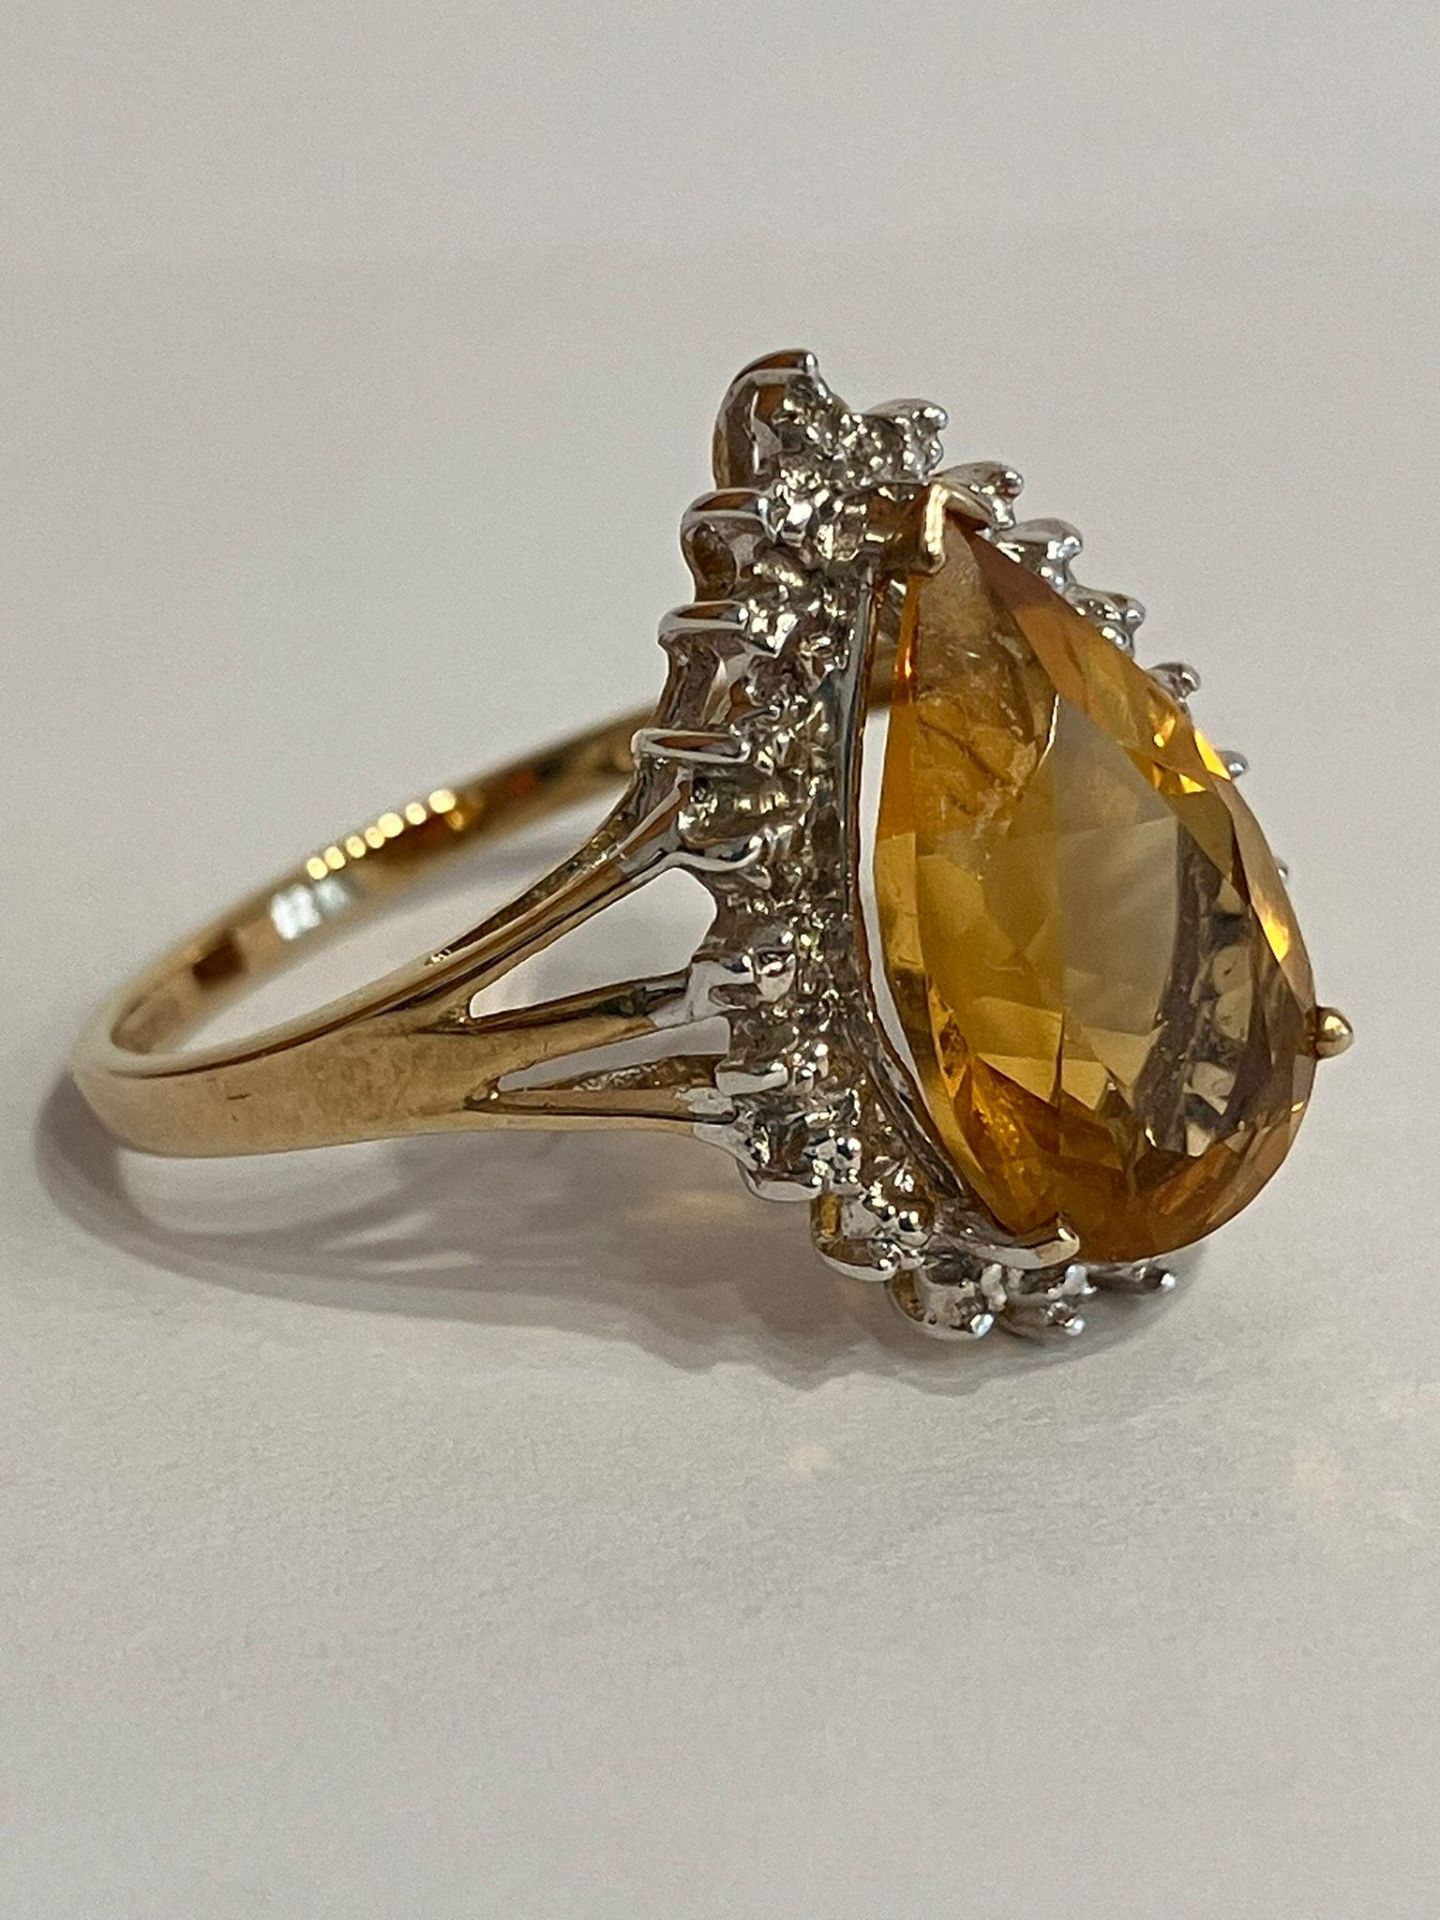 Stunning 9 carat GOLD and ORANGE TOURMALINE RING. Having a large ( 3 carat ) Pear Cut Orange